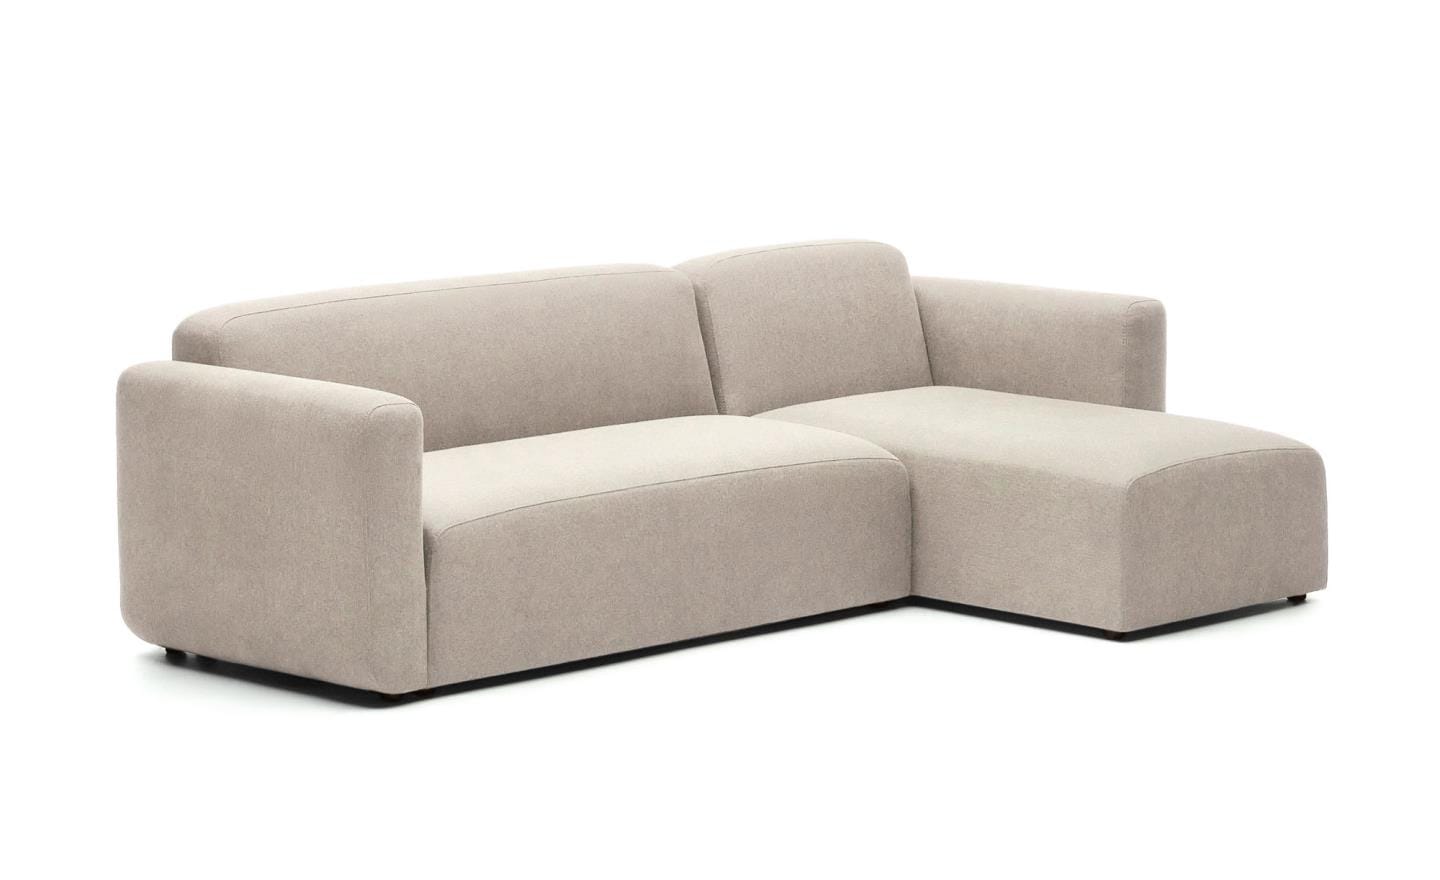 Sofá Chaise Longue Neom Beige, estofado em tecido estruturado bege, ideal para sala de estar.